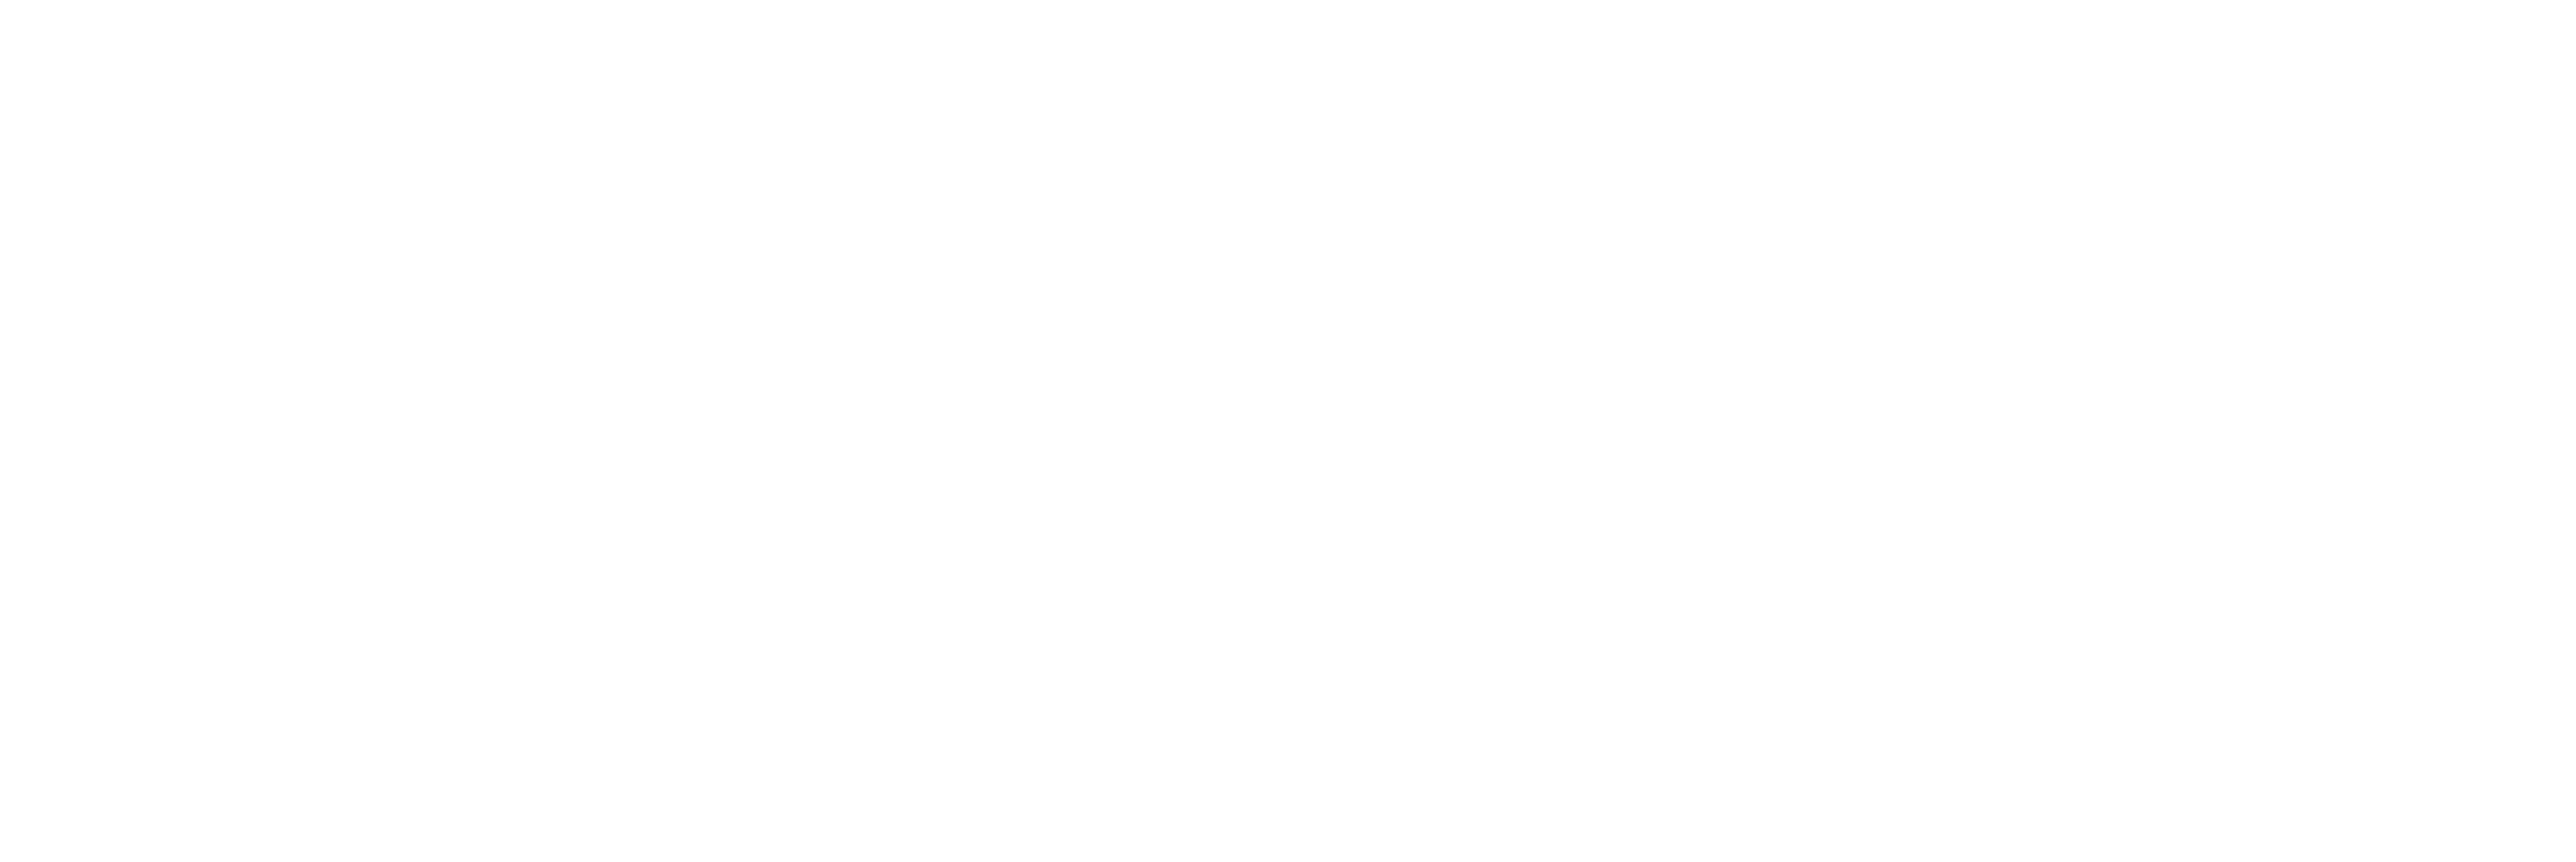 TRISTAR MEDIA Logo